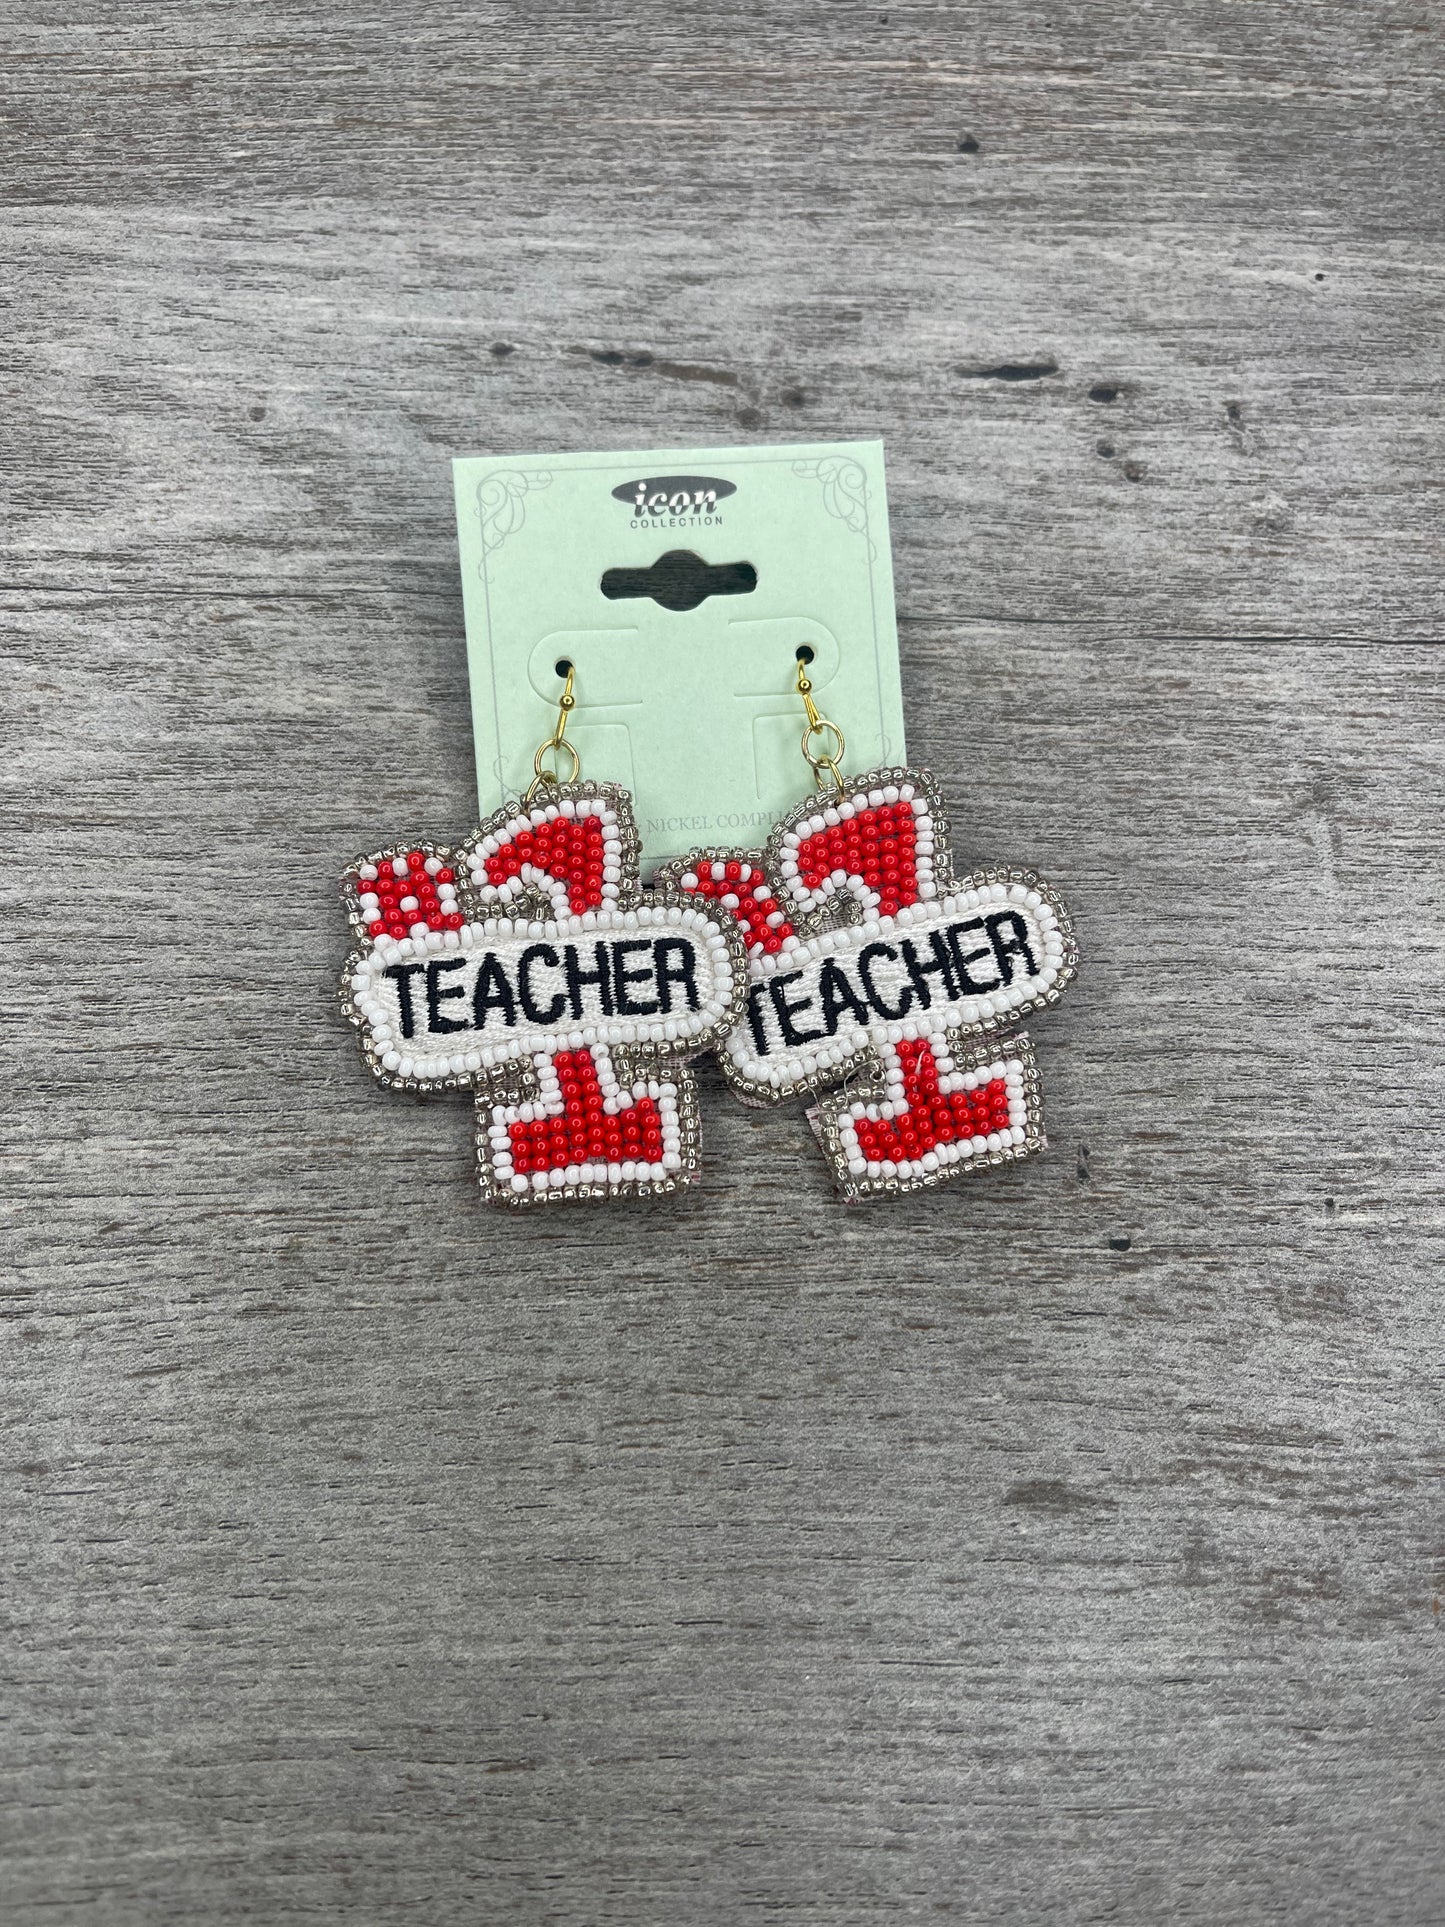 #1 Teacher Earrings